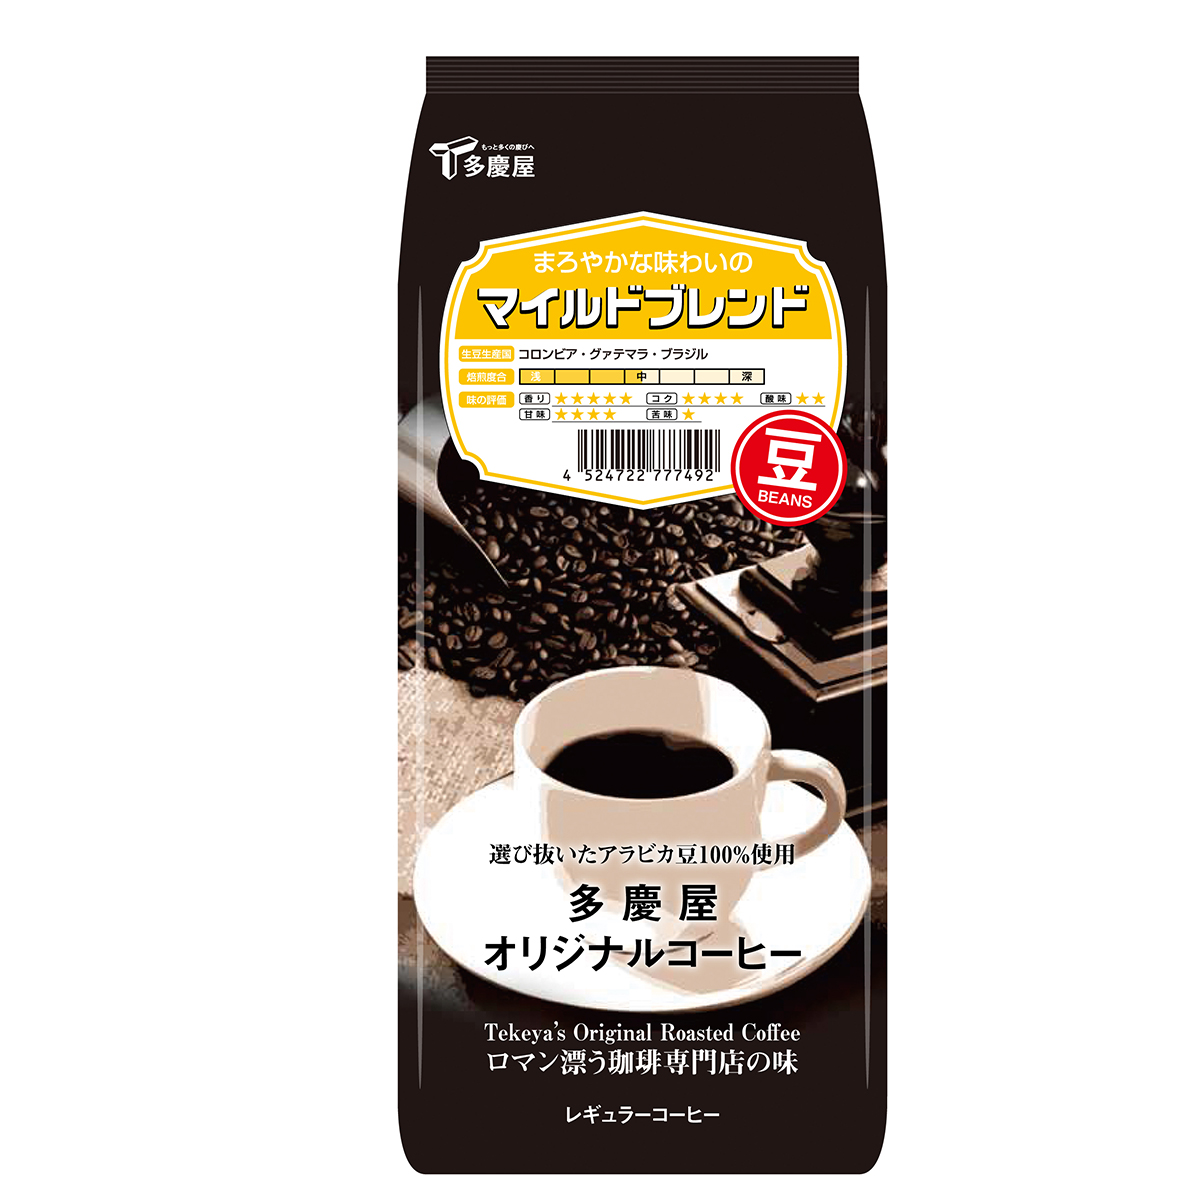 マイルドブレンド豆150g　多慶屋オリジナルコーヒーコーヒー豆レギュラーコーヒー